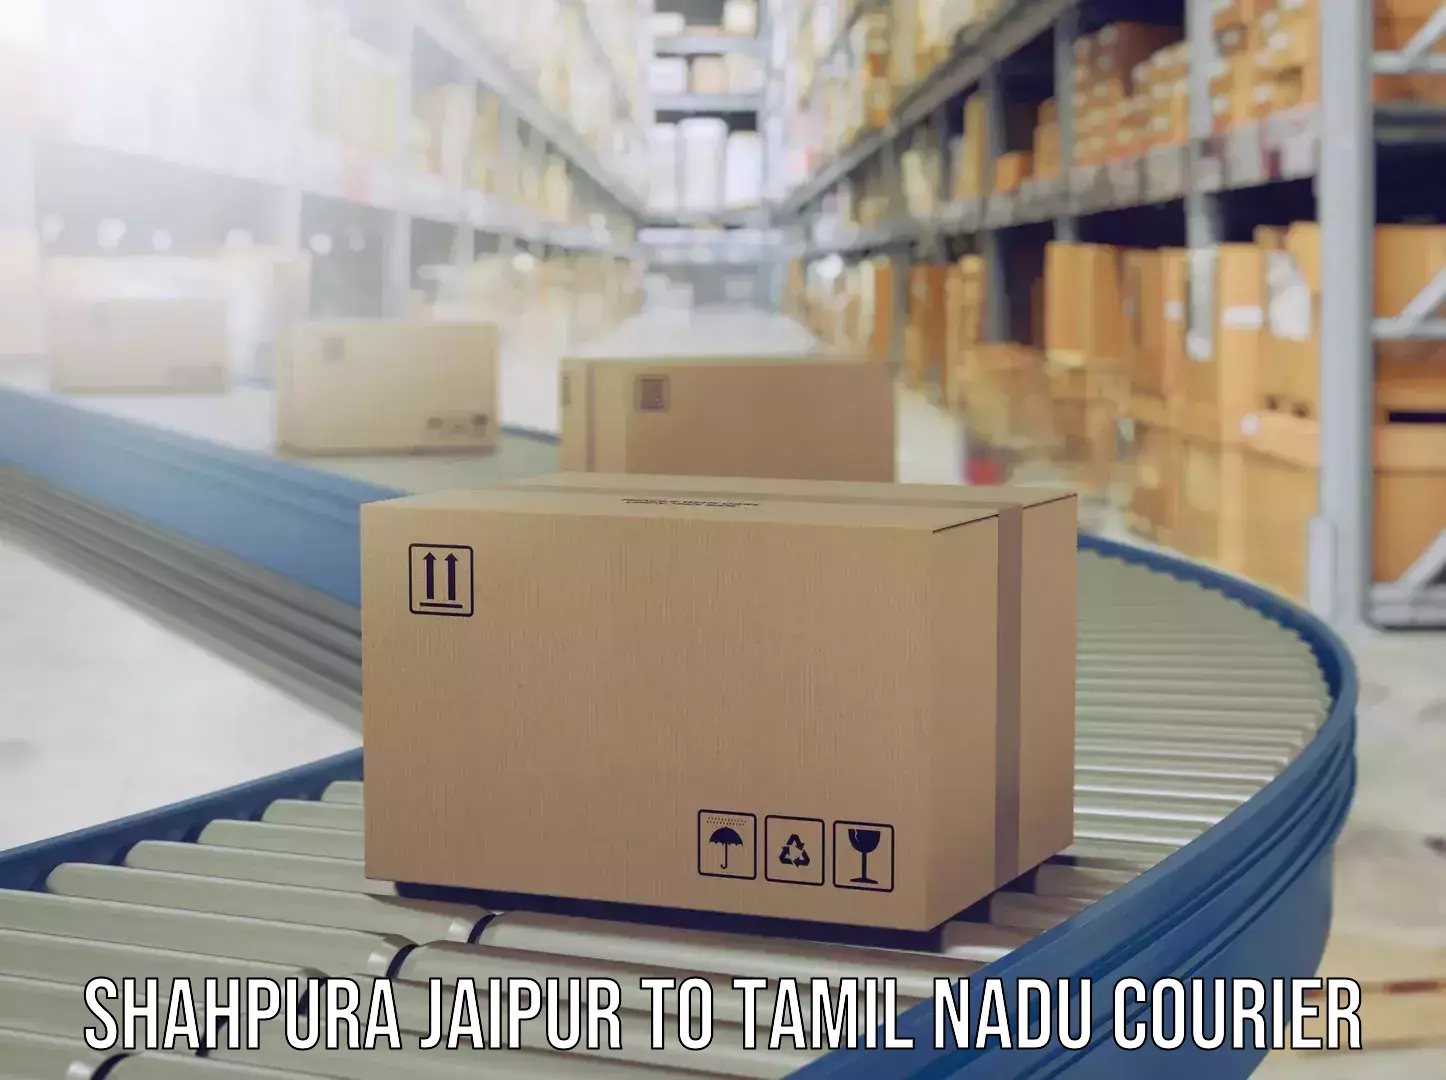 Luggage shipment specialists Shahpura Jaipur to Natham